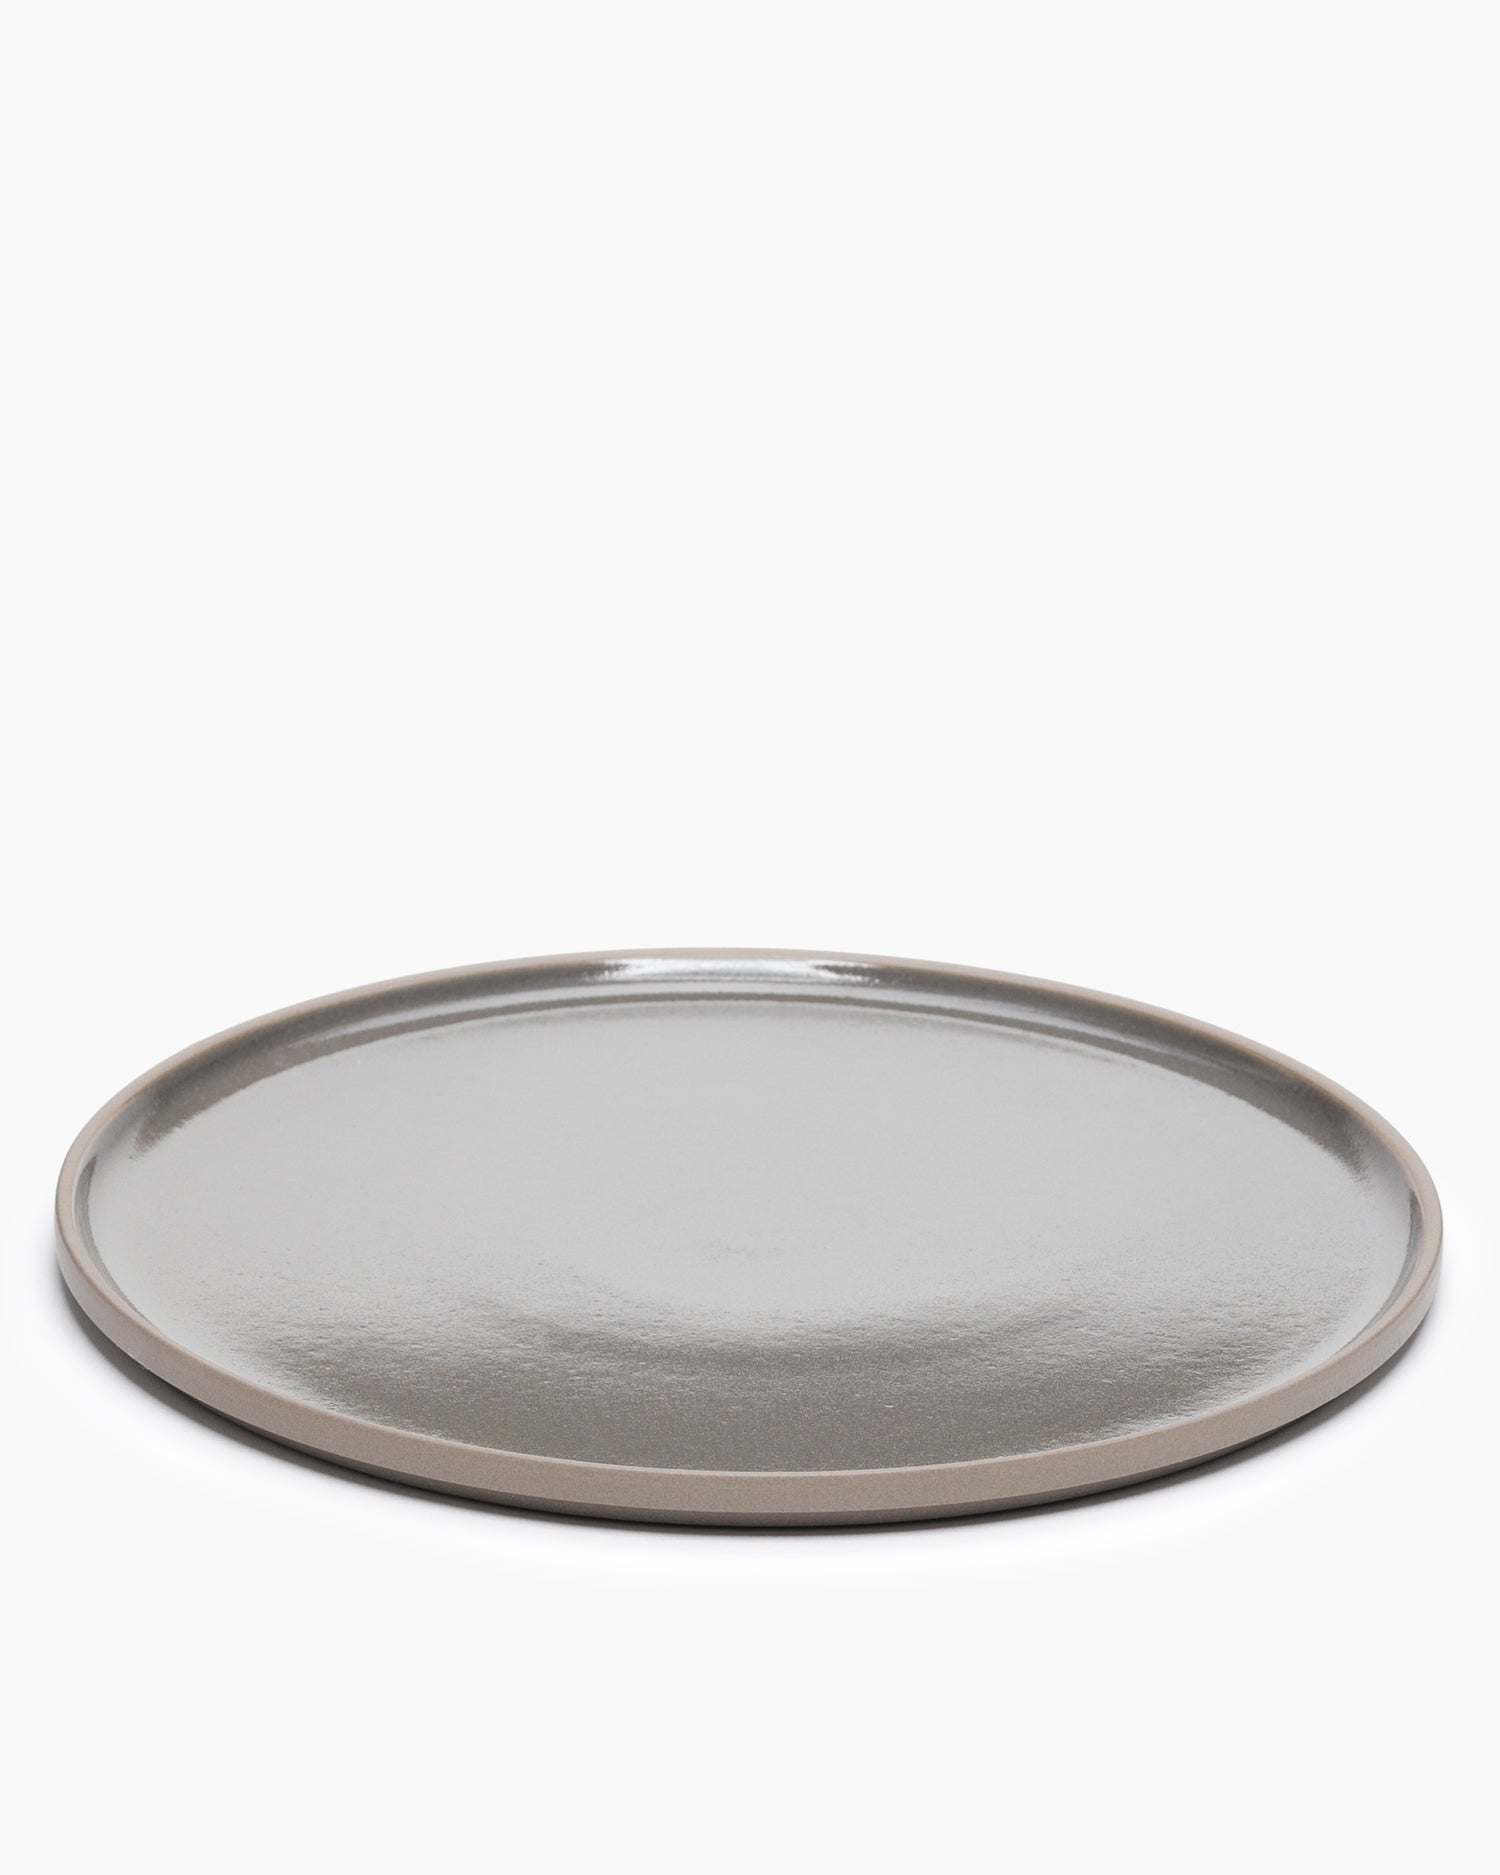 HDG105 Plate Gloss Dark Gray